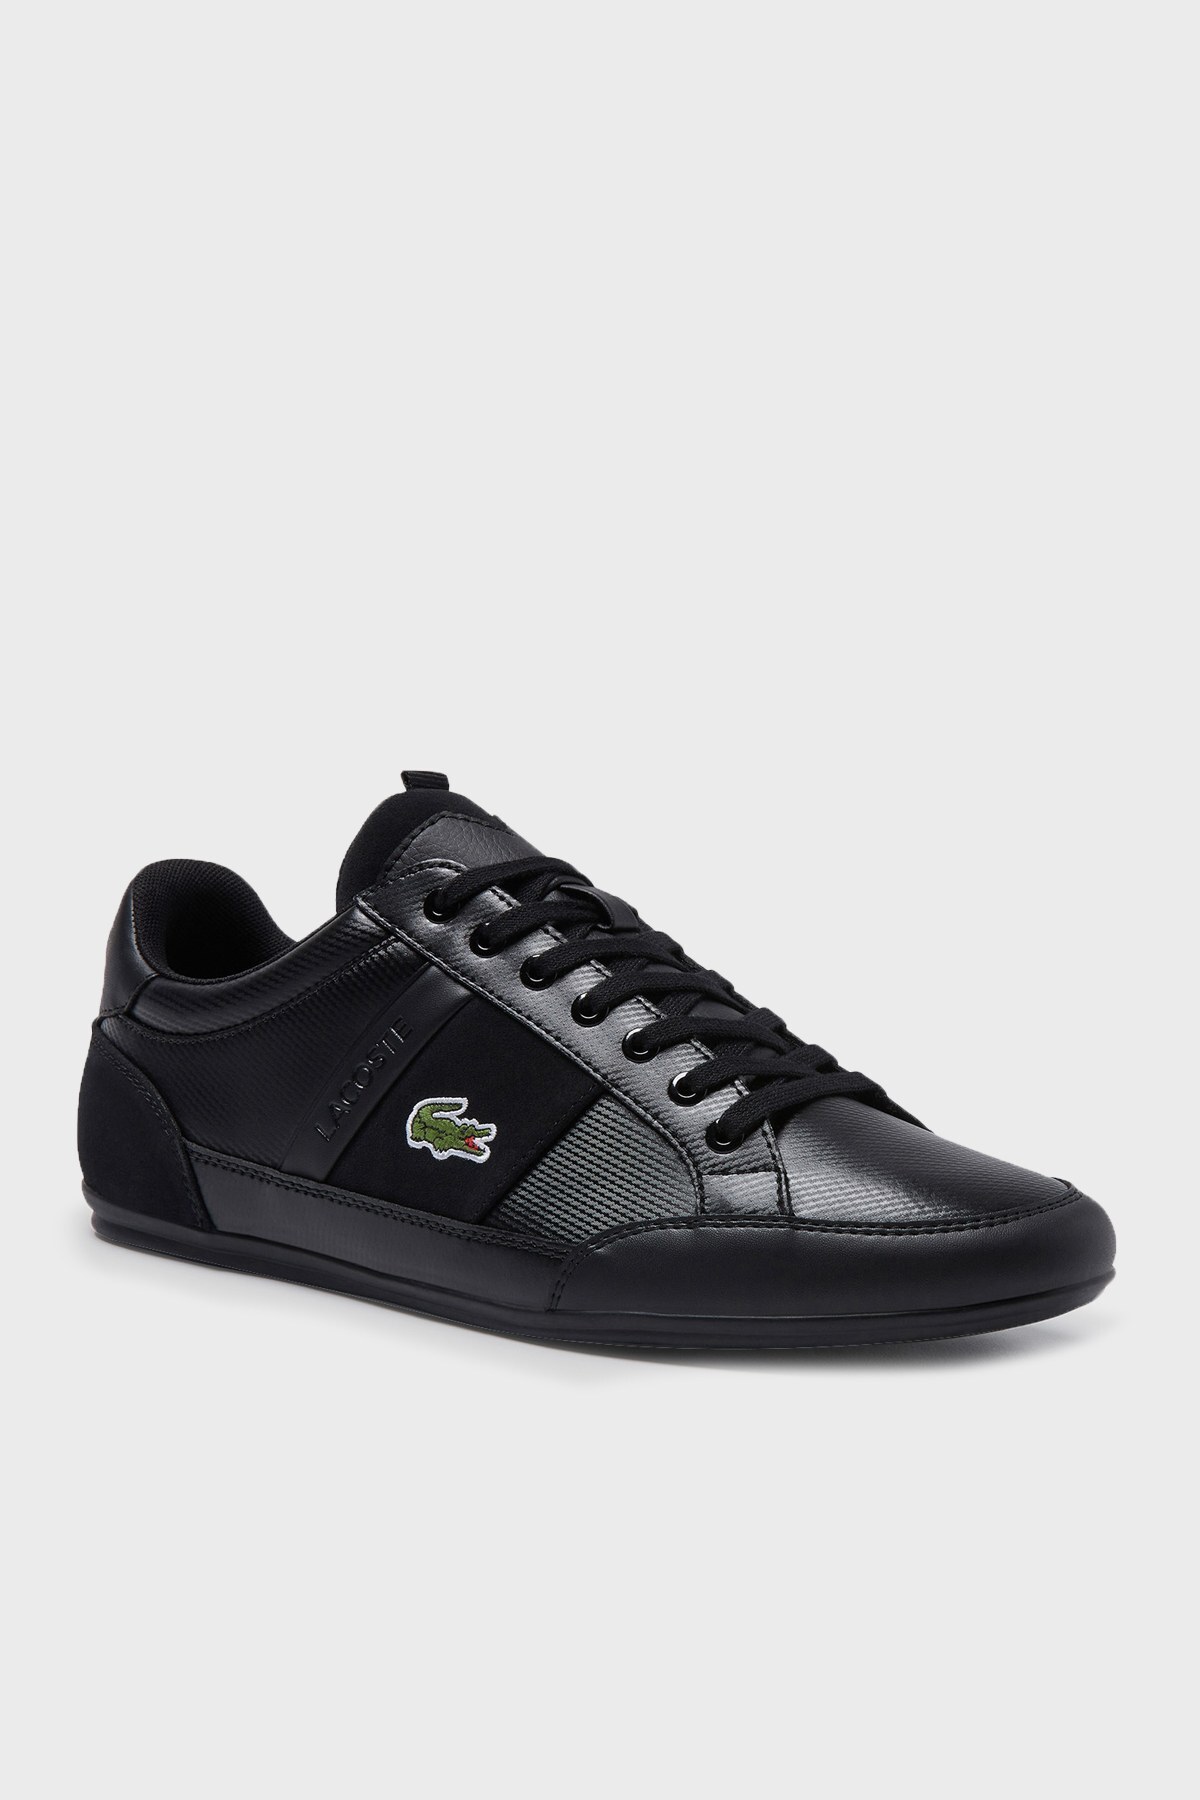 Lacoste Logolu Bağcıklı Deri Sneaker Erkek Ayakkabı 743CMA0035 02H SİYAH